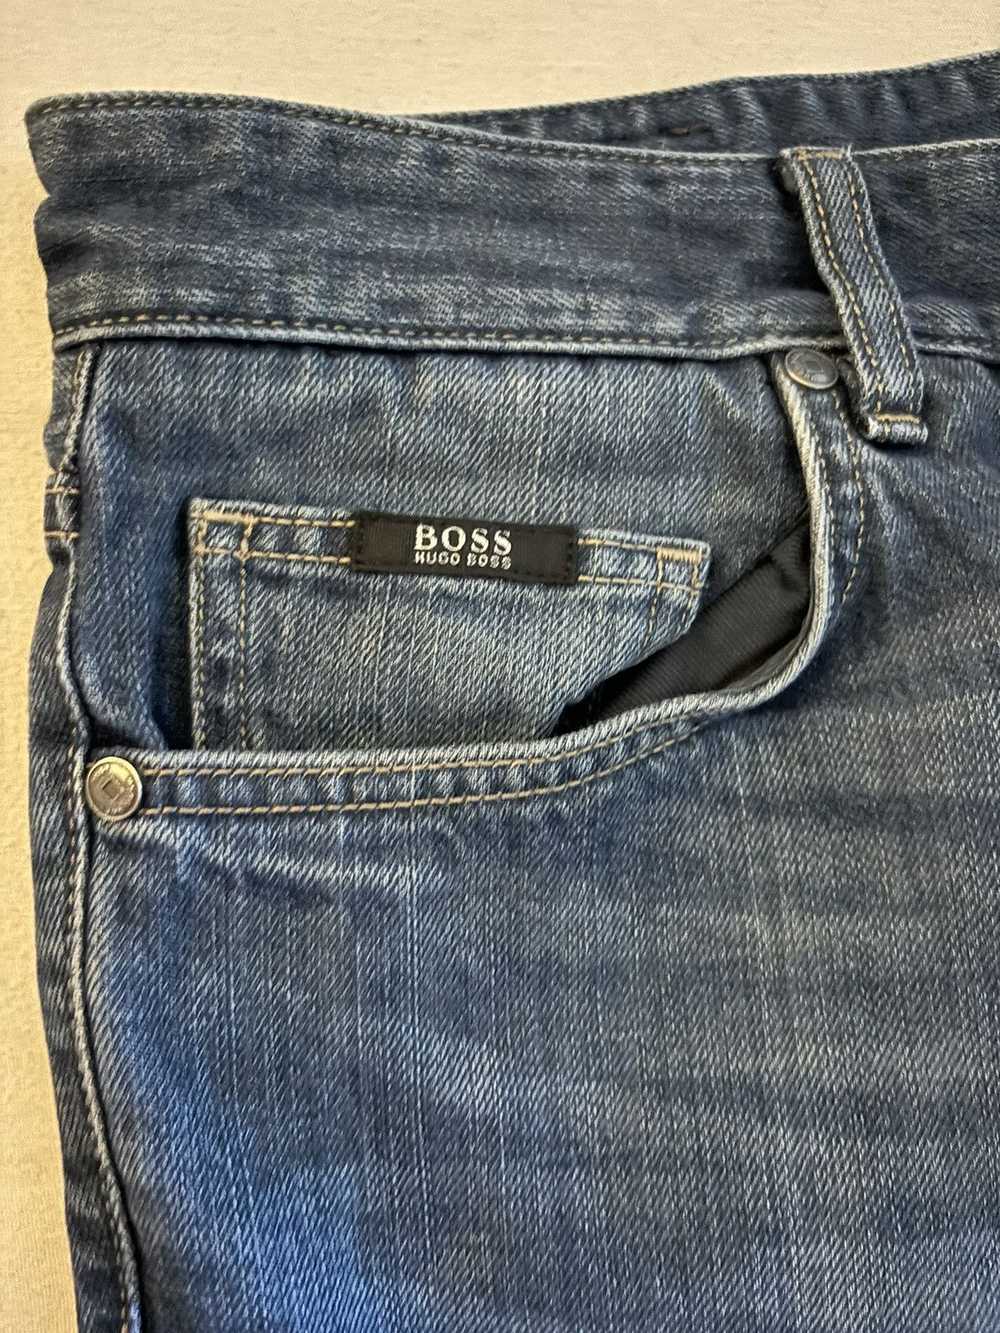 Hugo Boss Hugo boss blue jeans size 36 - image 5